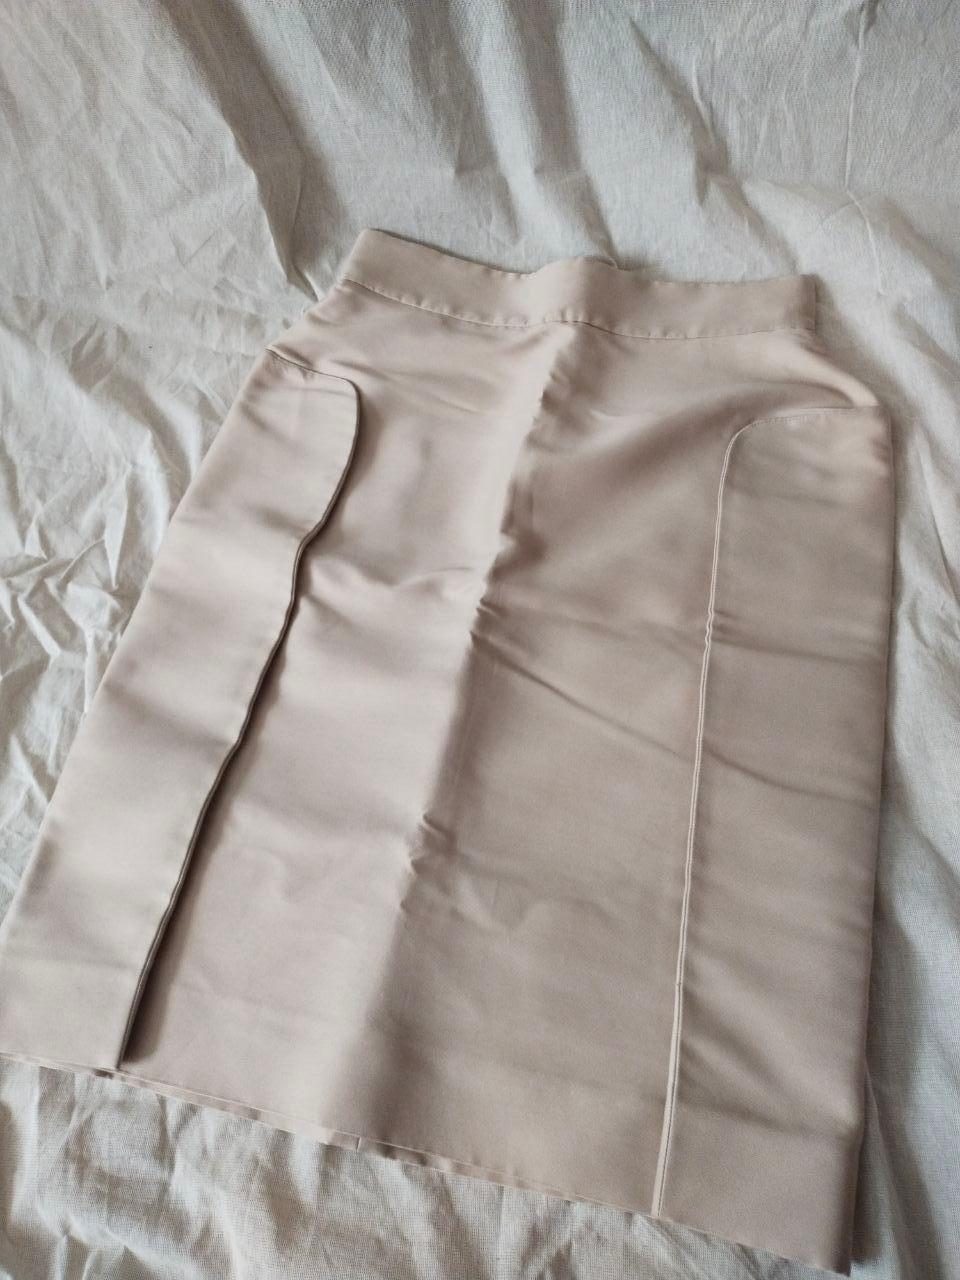 Yves Saint Laurent & Stefano Pilati 2009 YSL Skirt (Spring 2009 Ready-to-Wear) For Sale 10